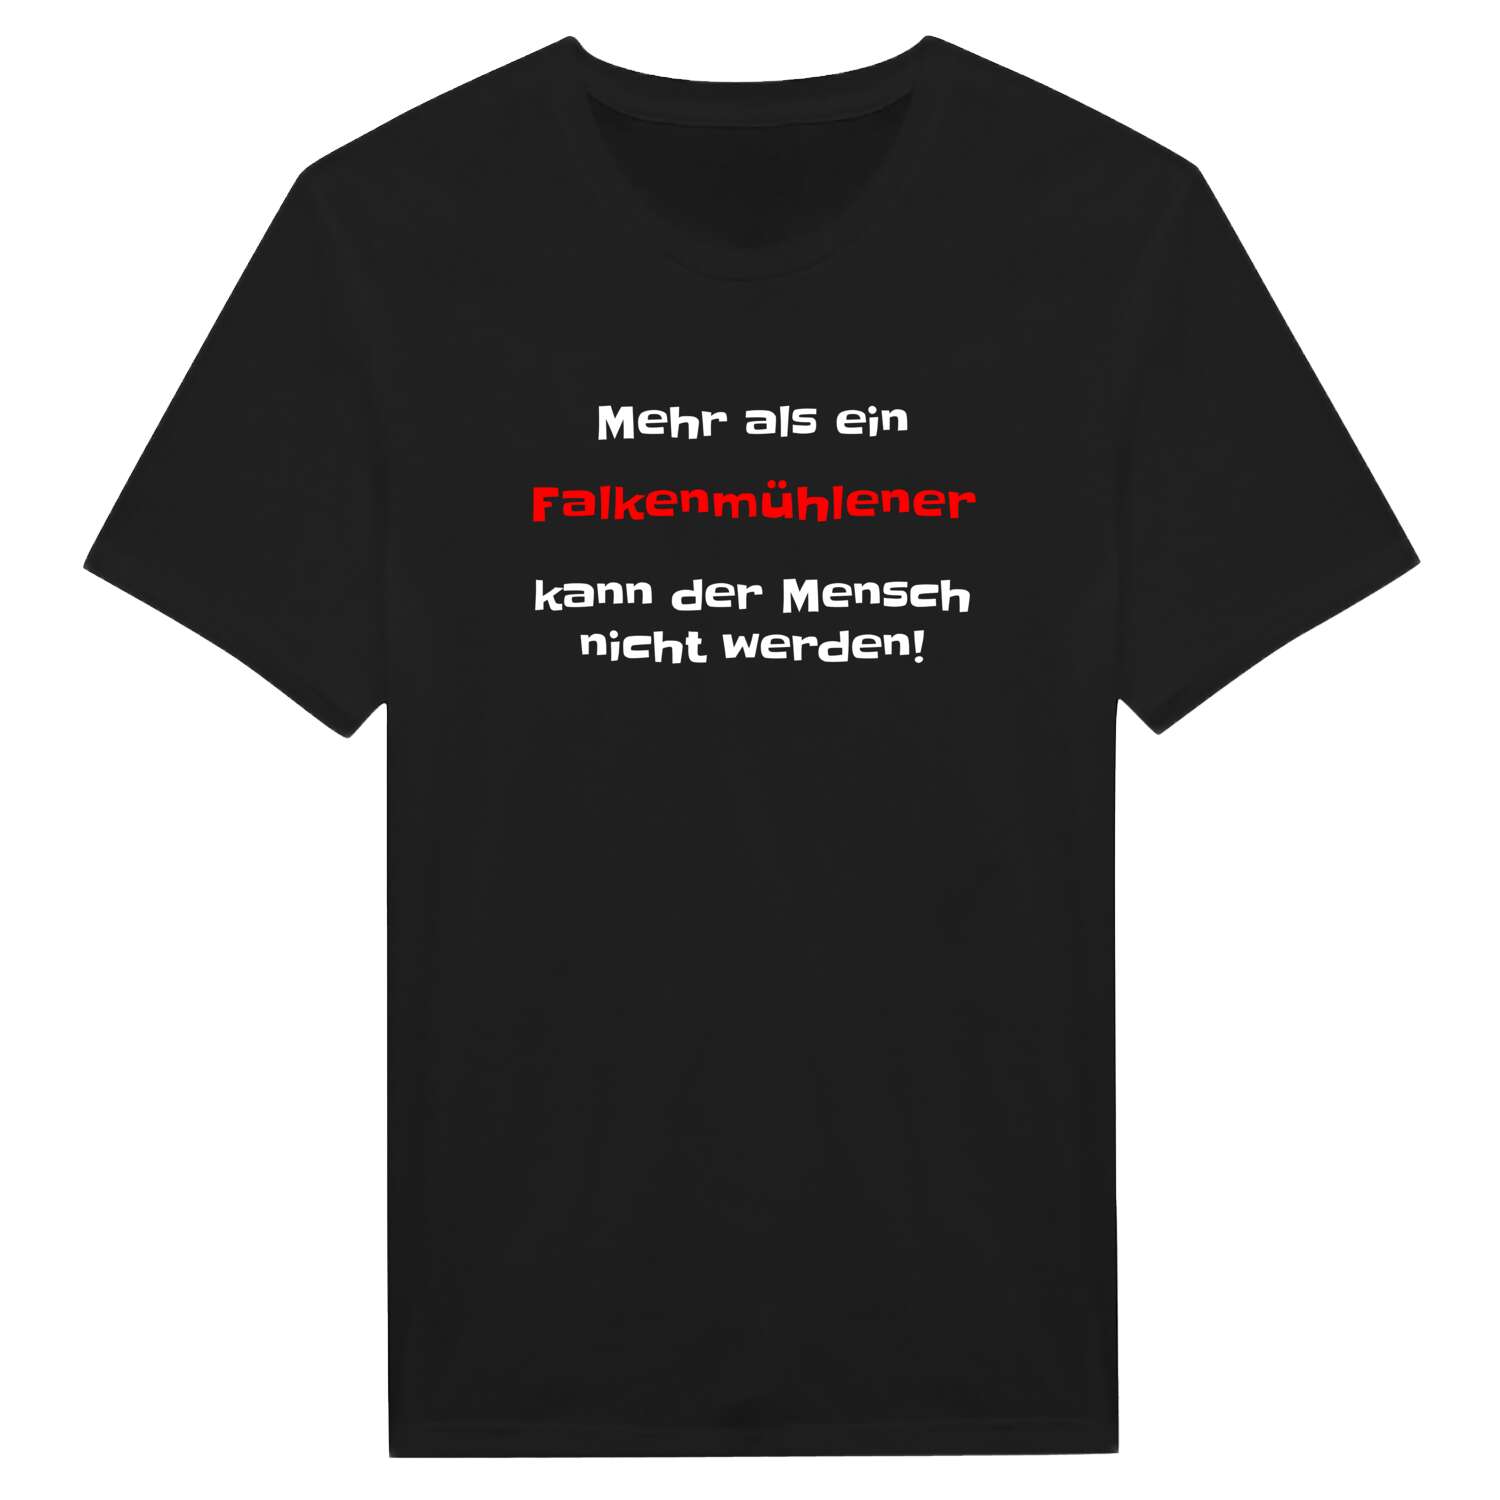 Falkenmühle T-Shirt »Mehr als ein«